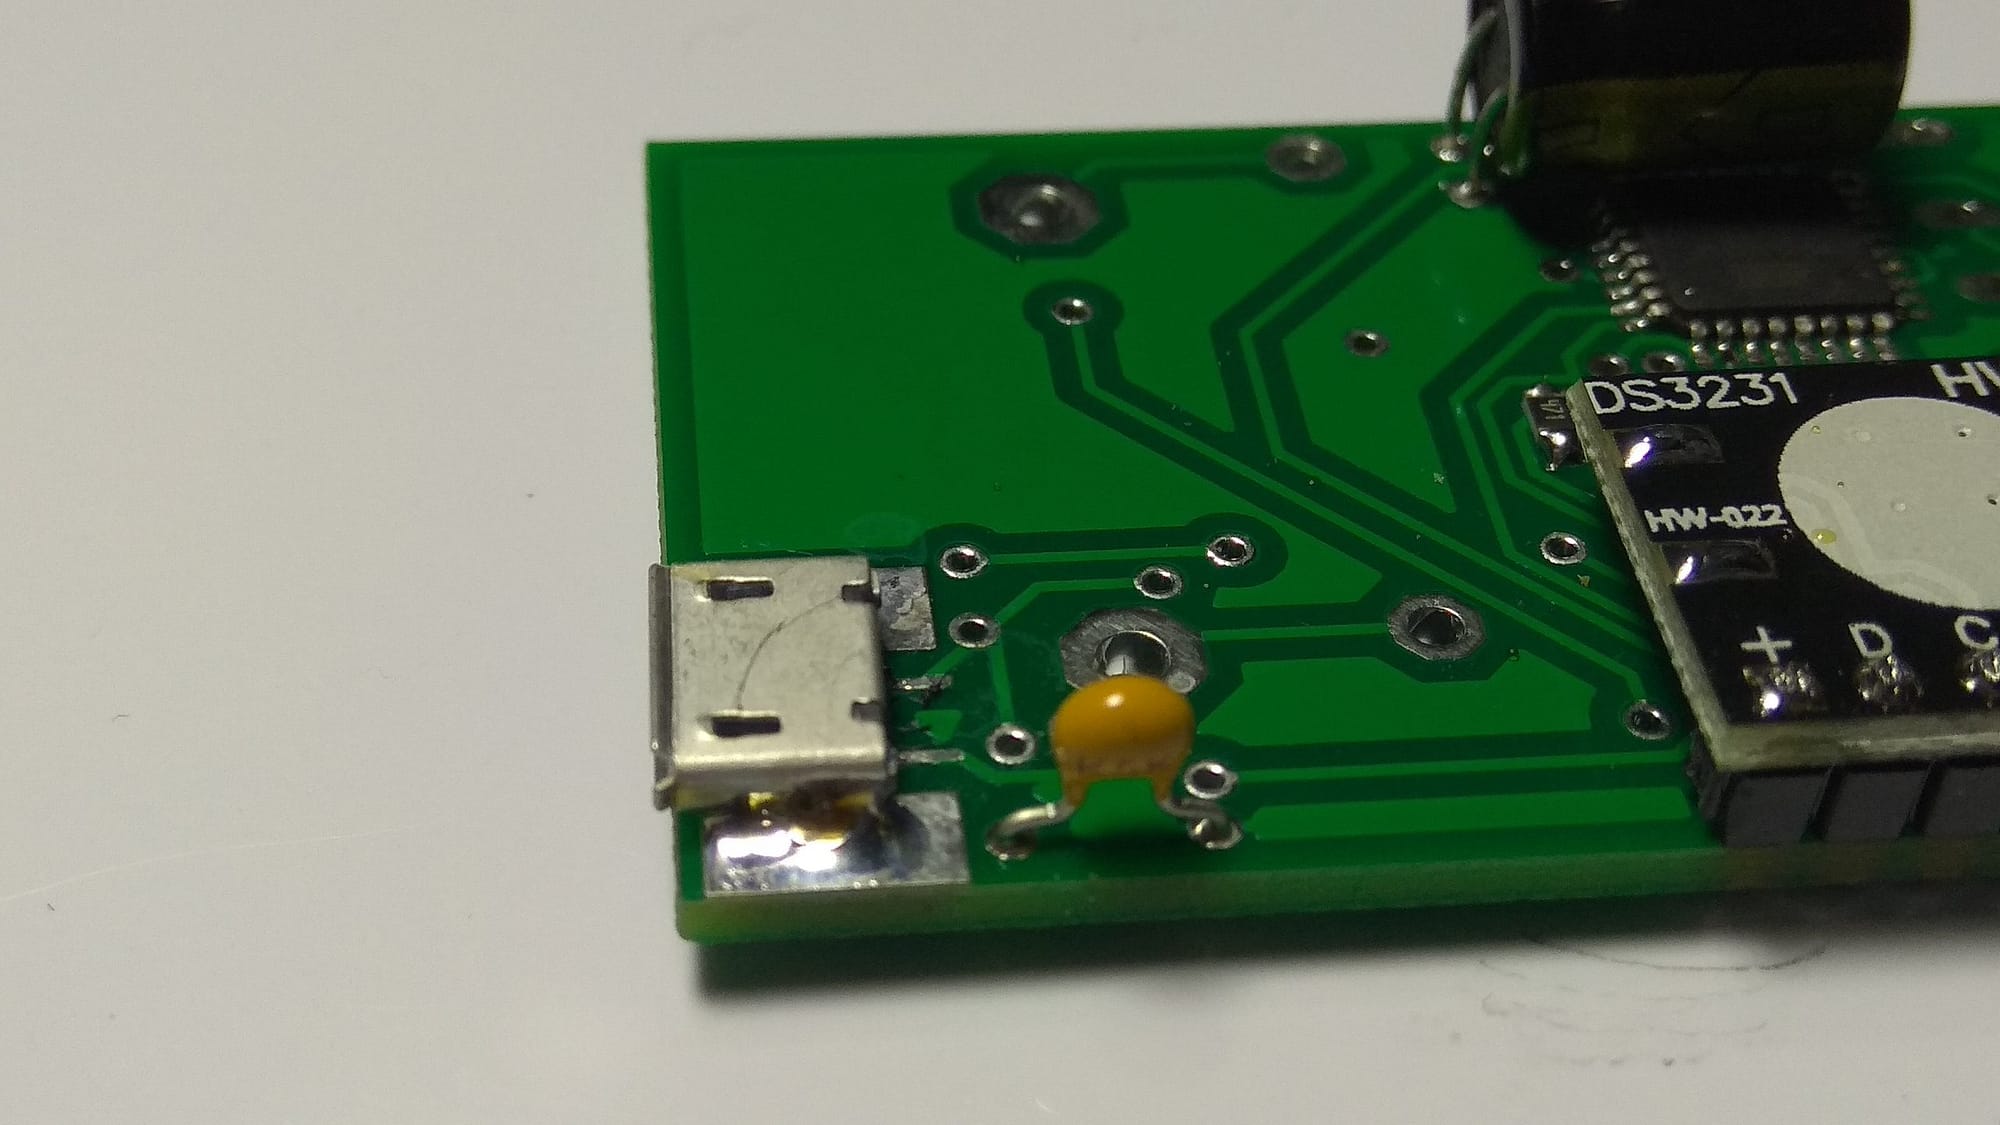 Detalle condensador C1 y conector micro USB..